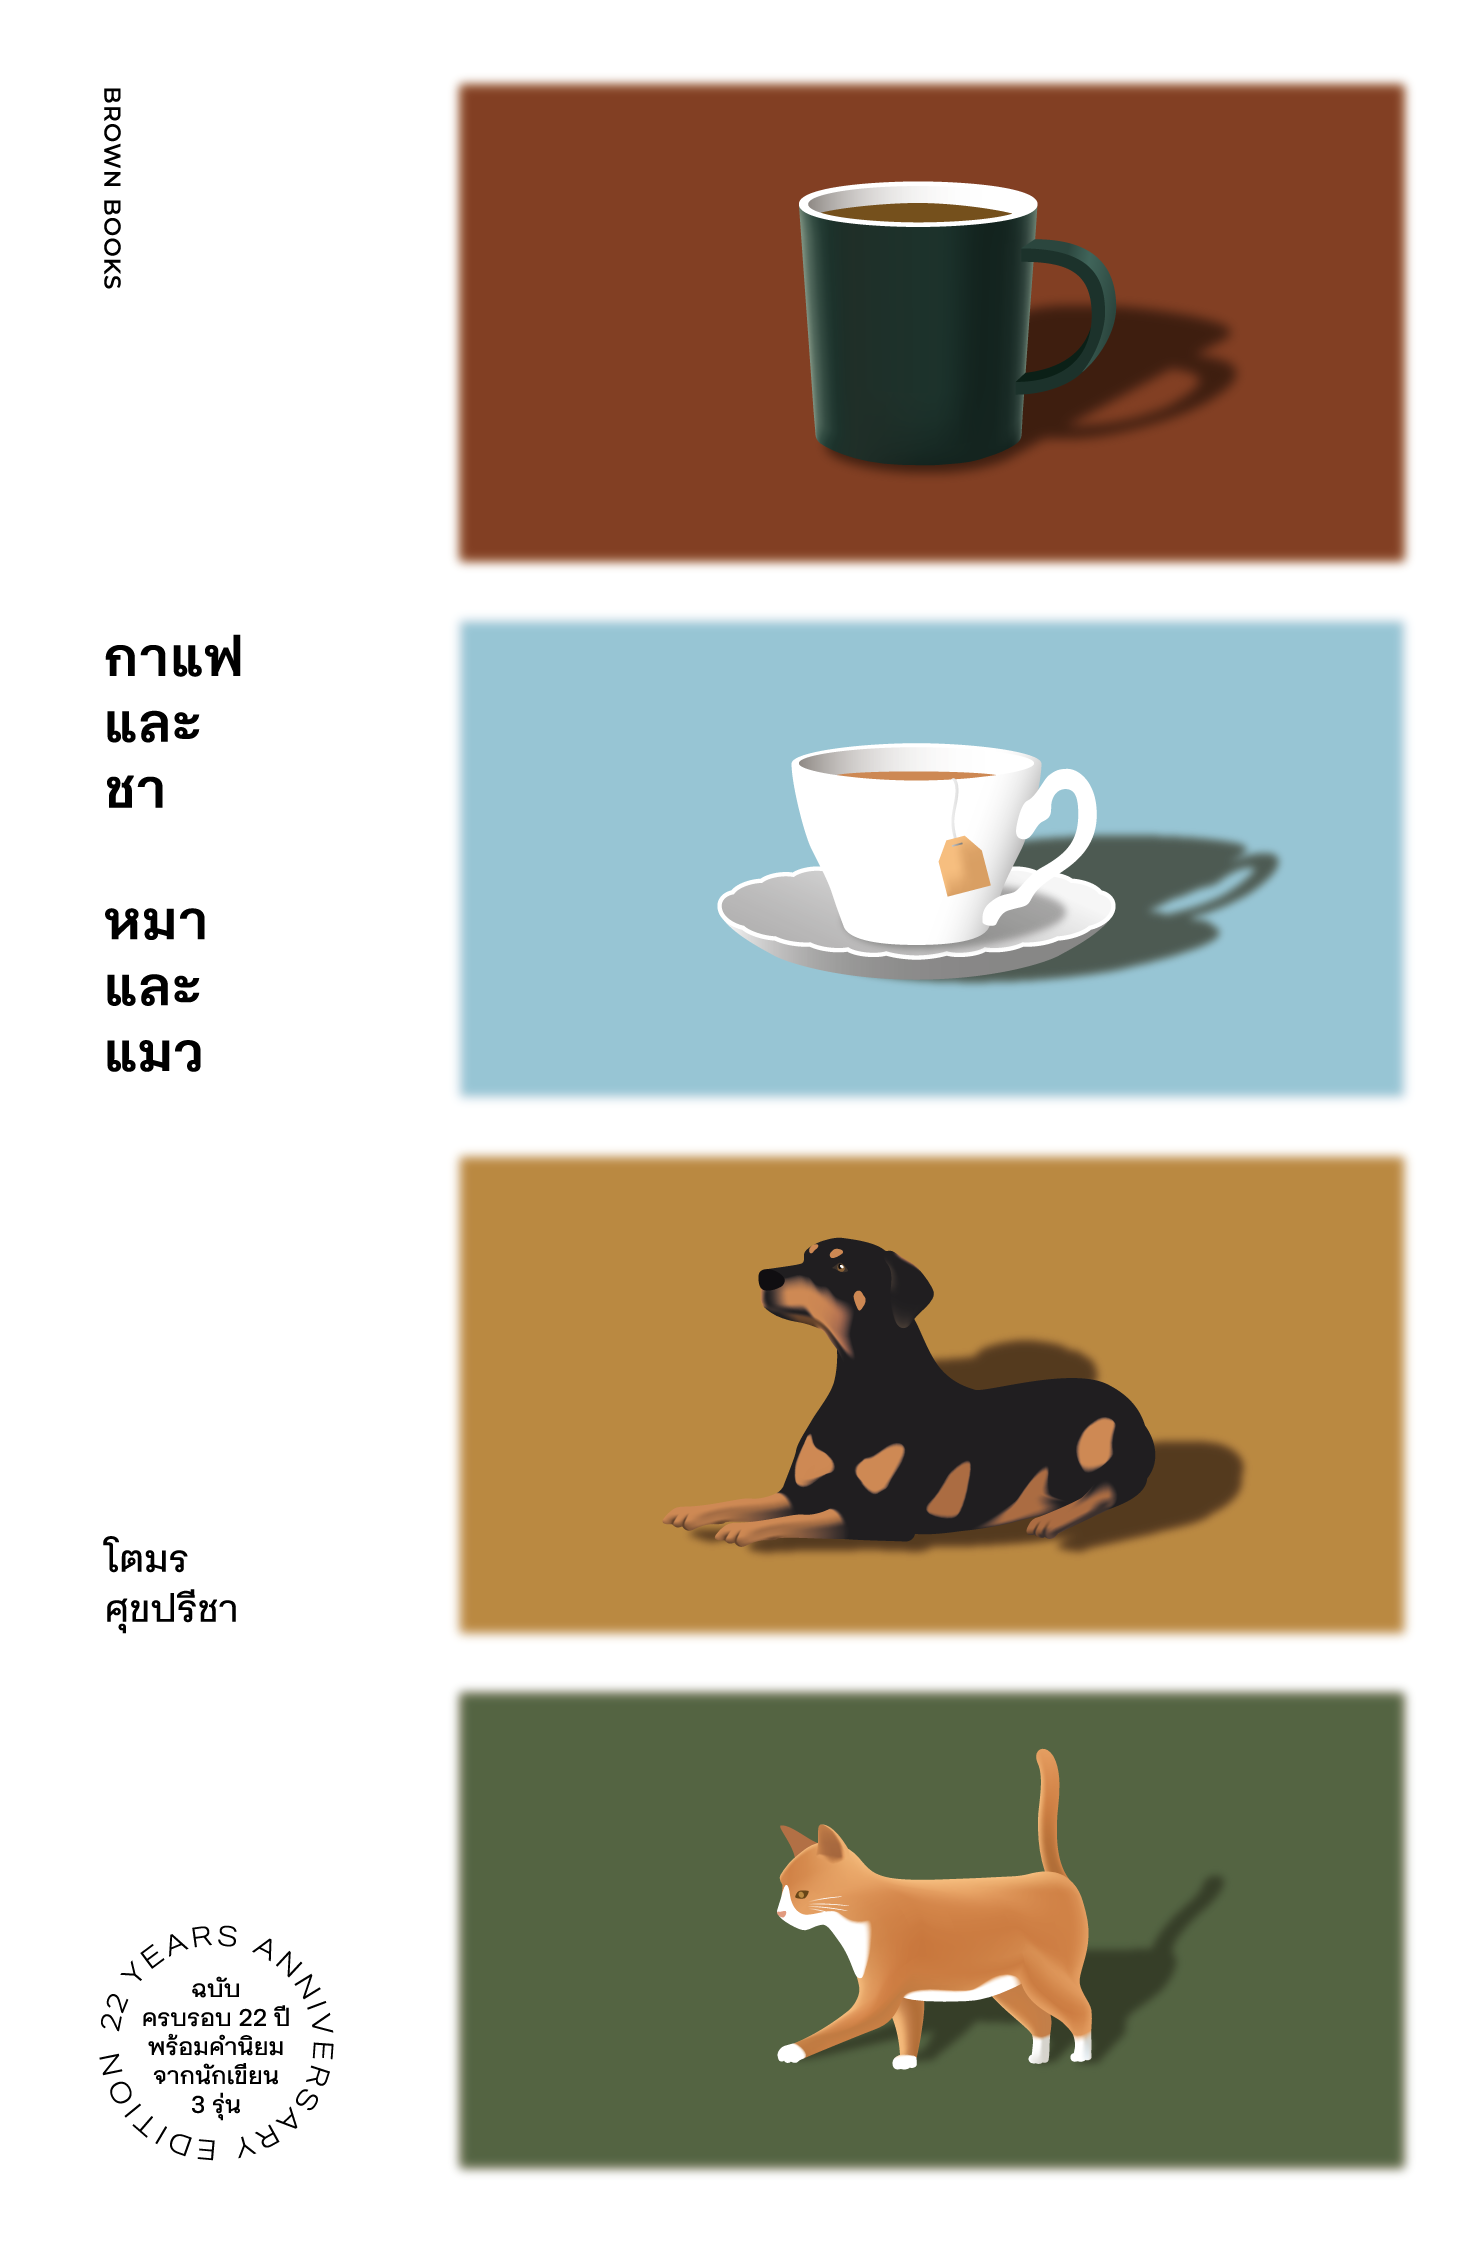 กาแฟและชา หมาและแมว / โตมร ศุขปรีชา หนังสือความเรียงและสารคดี / Brown Books